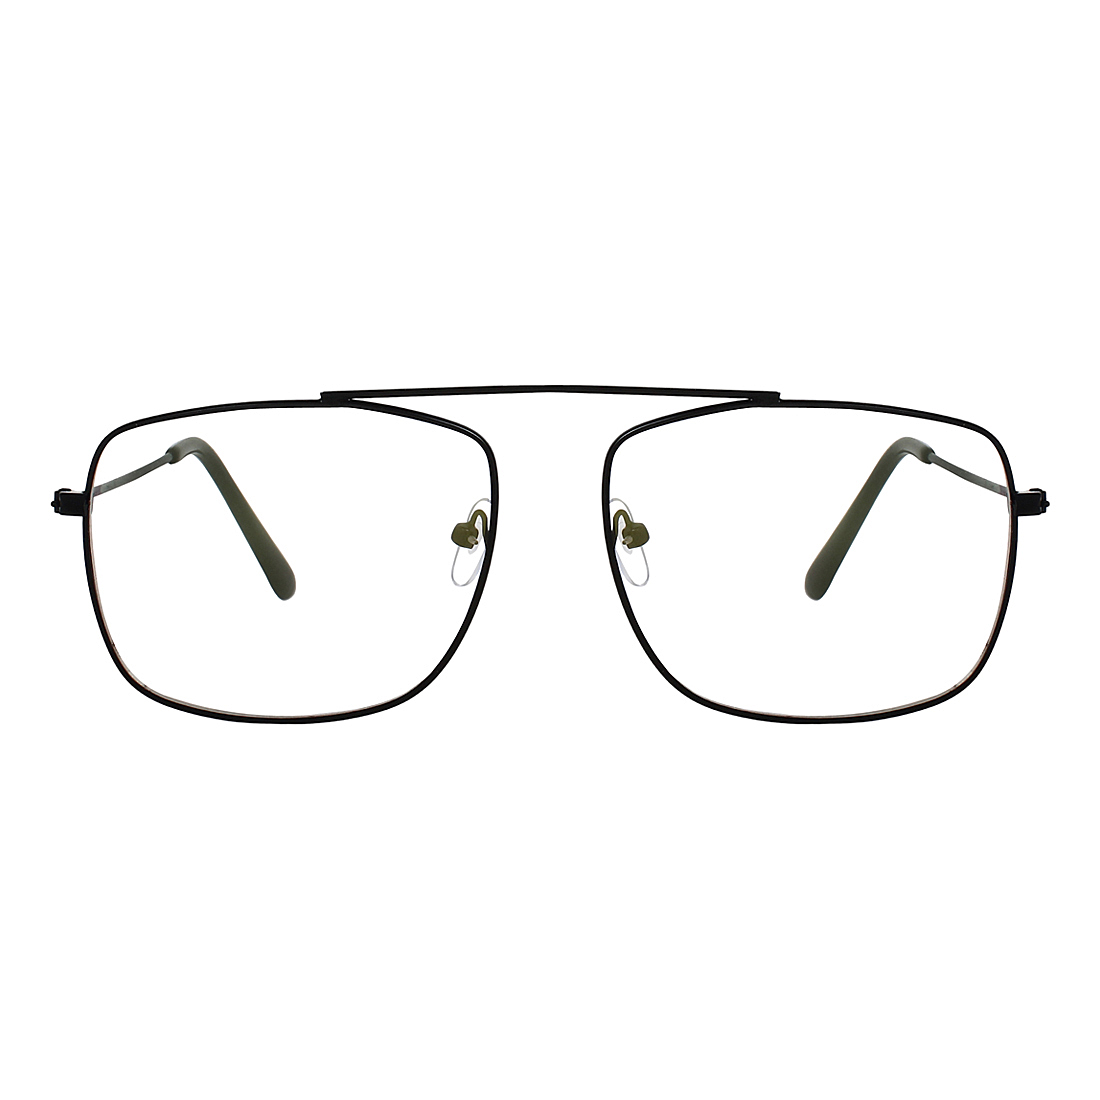 Buy Zyaden Full Rim Rectangular Eyewear Frame 488 Online @ ₹309 from ...